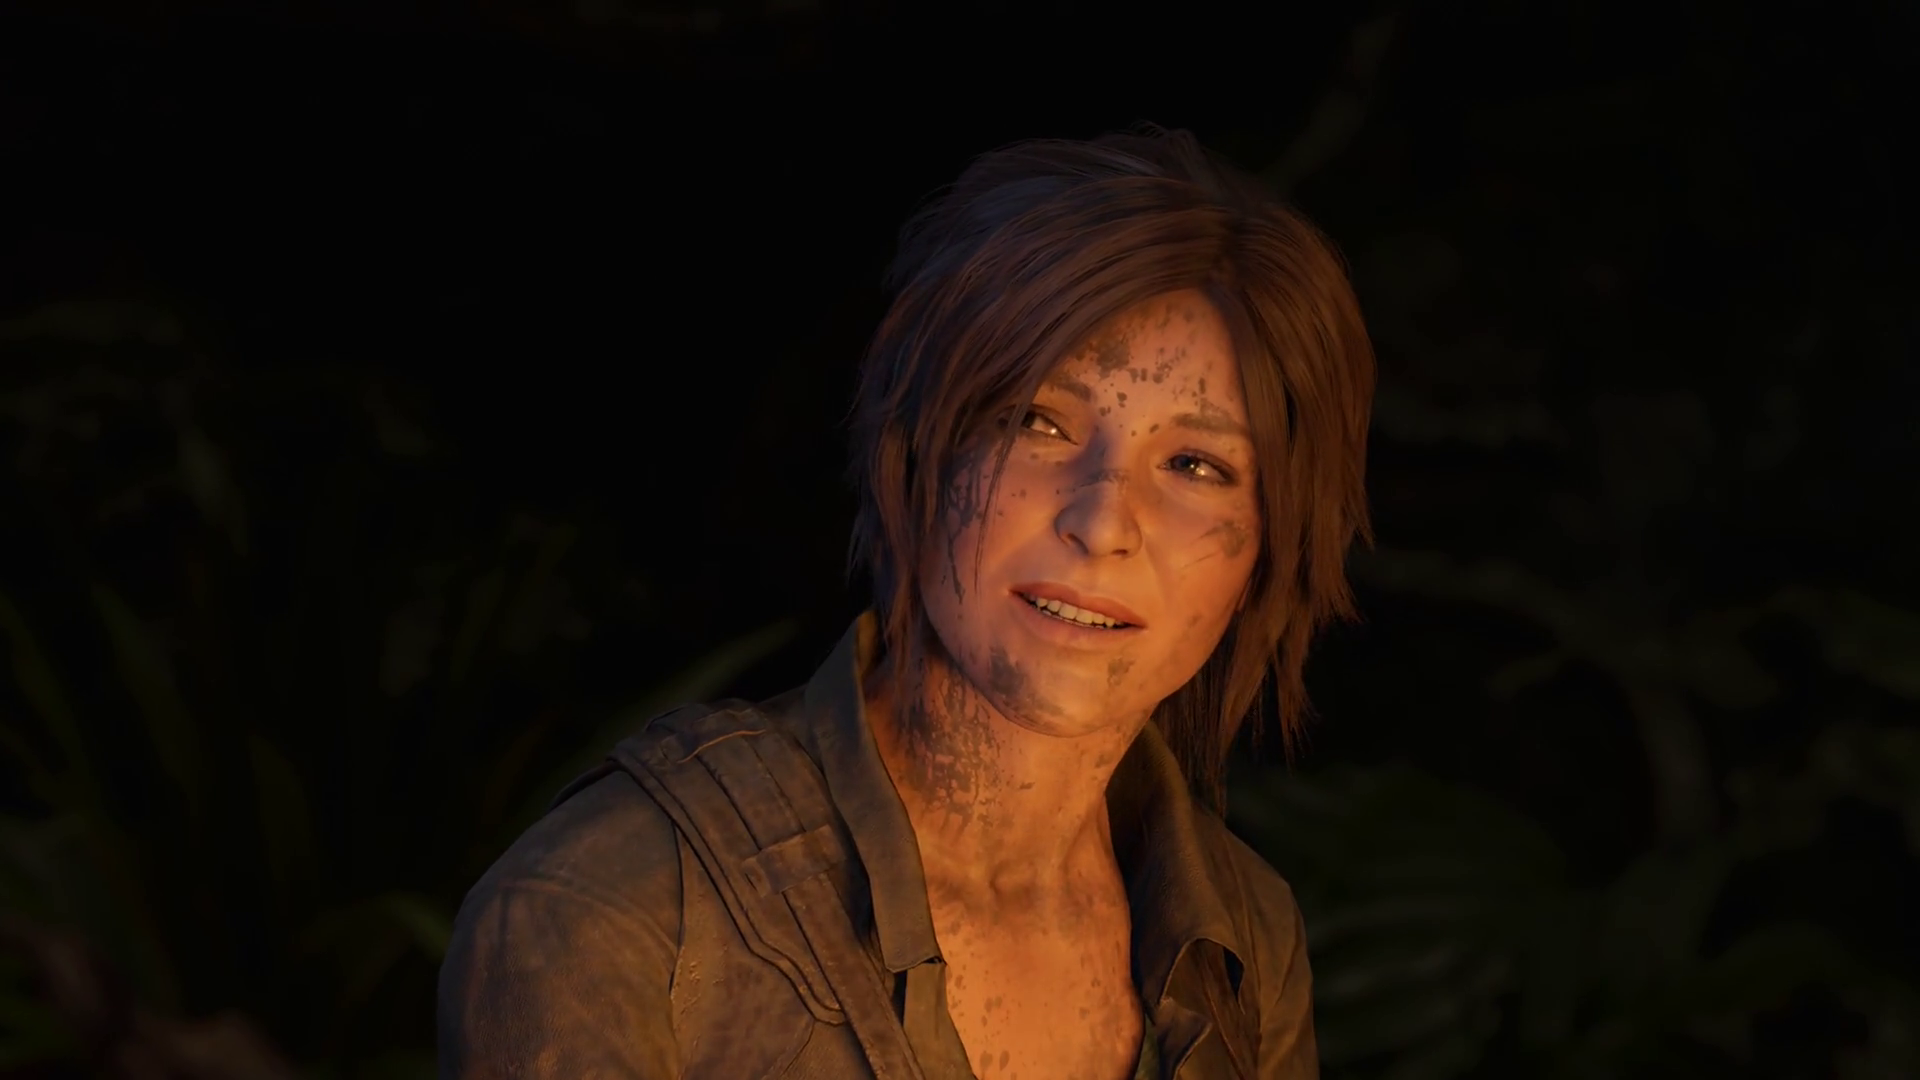 Lara Smiling